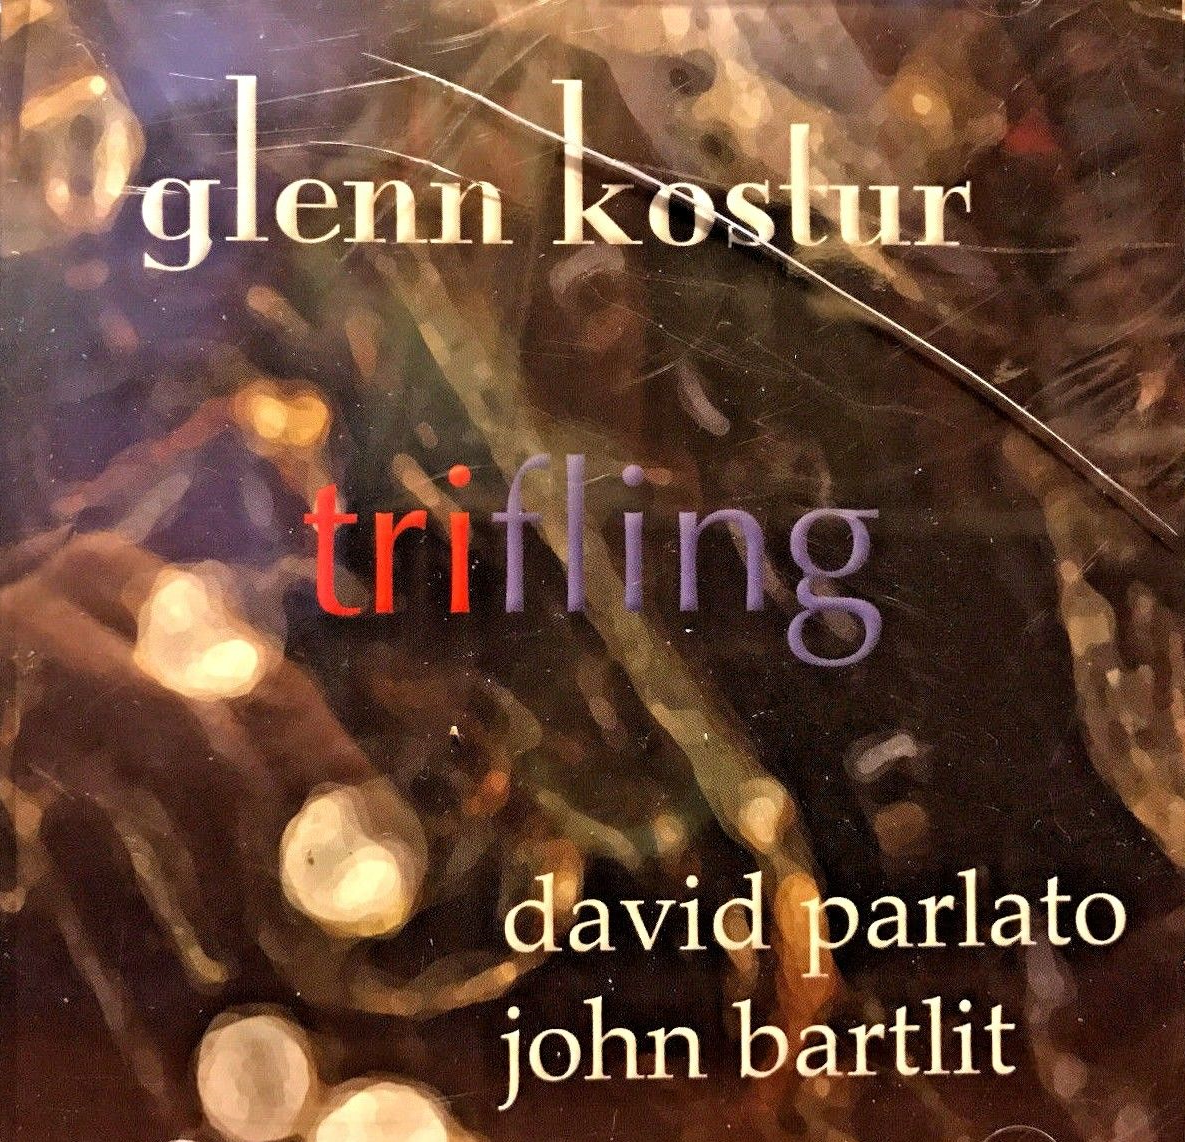 GLENN KOSTUR - Trifling cover 